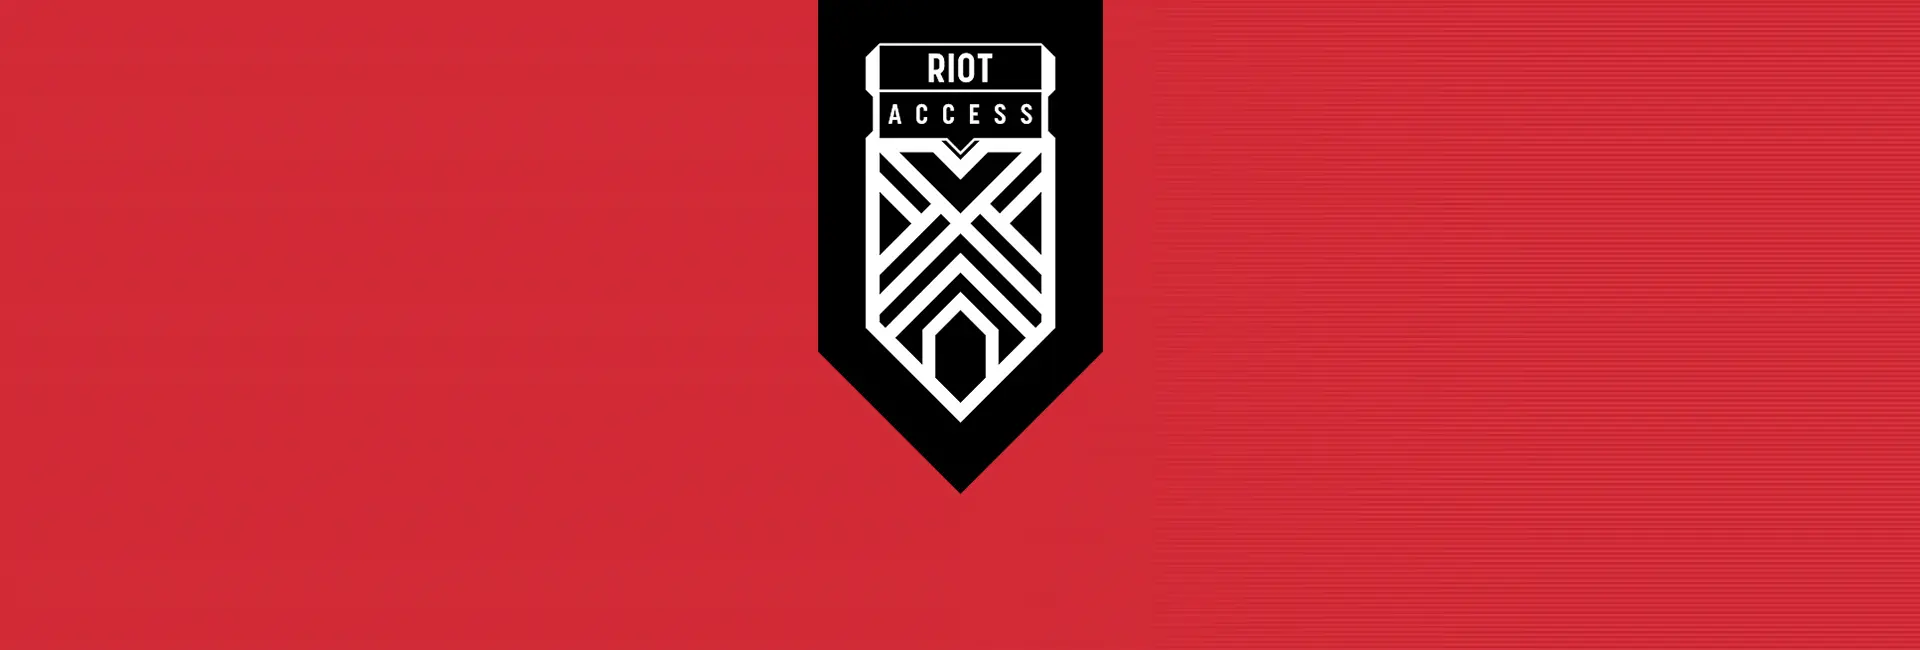 Riot Access Code USA